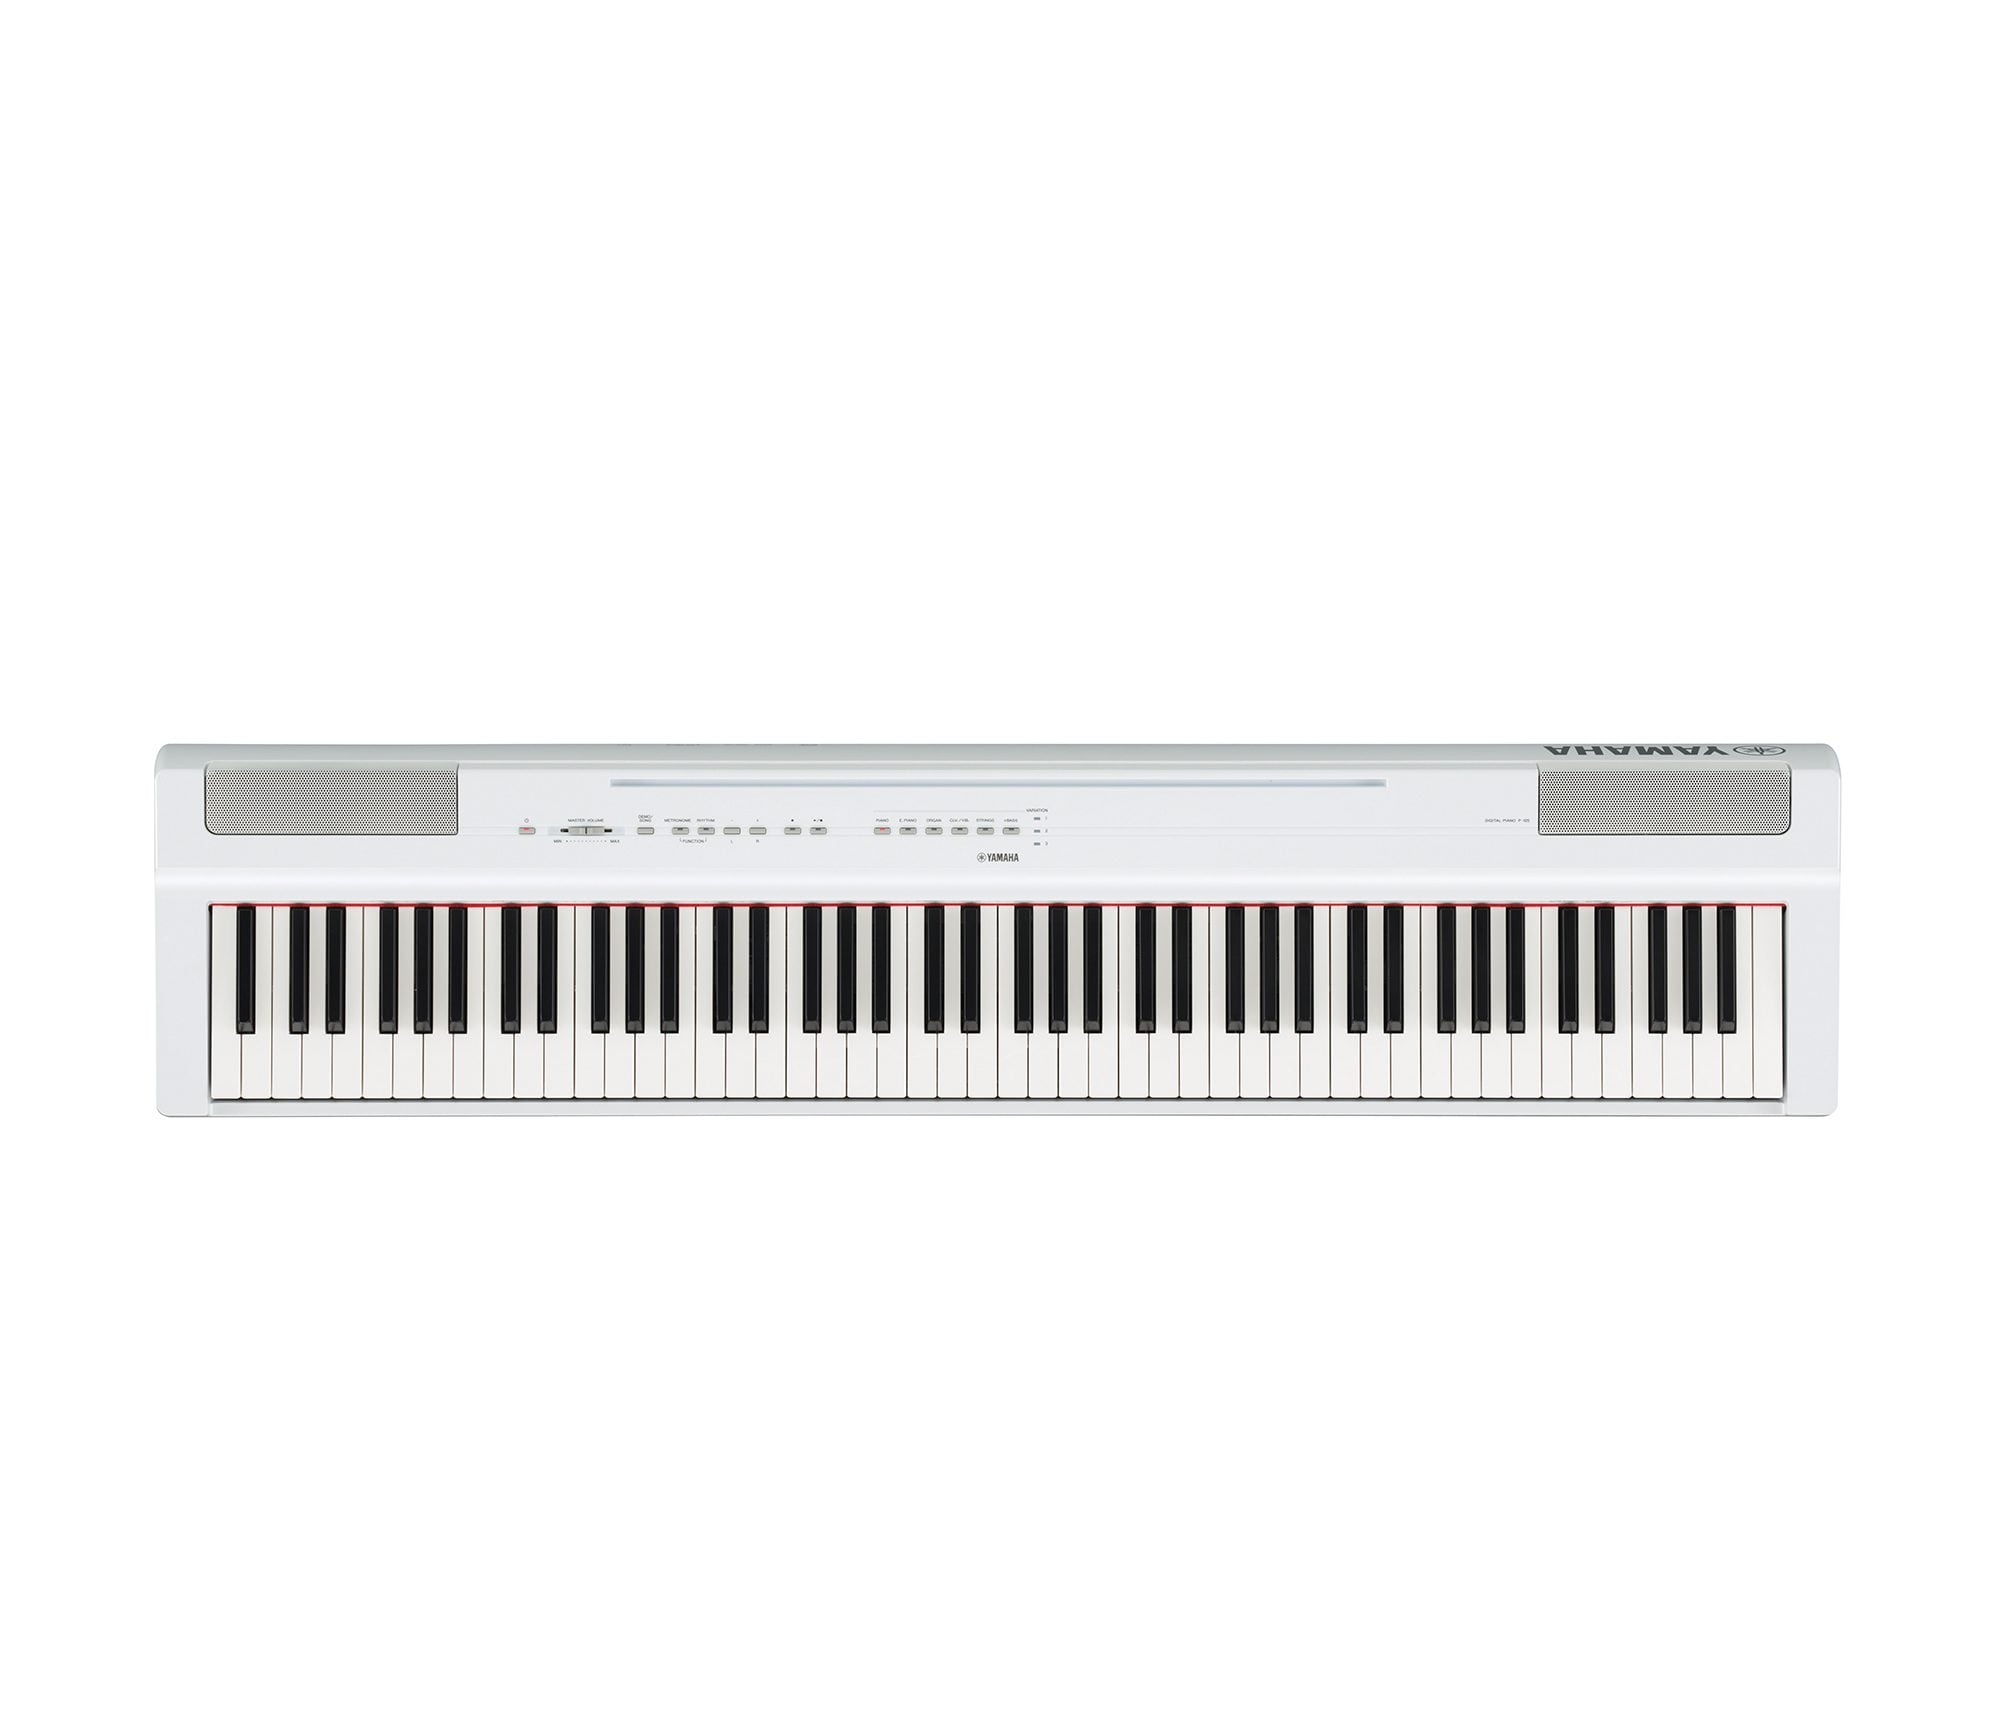 – Kompaktes elektronisches Klavier in schlichtem Design für perfekte Spielbarkeit Kompatibel mit kostenloser App Smart Pianist schwarz Yamaha P-125B Digital Piano 